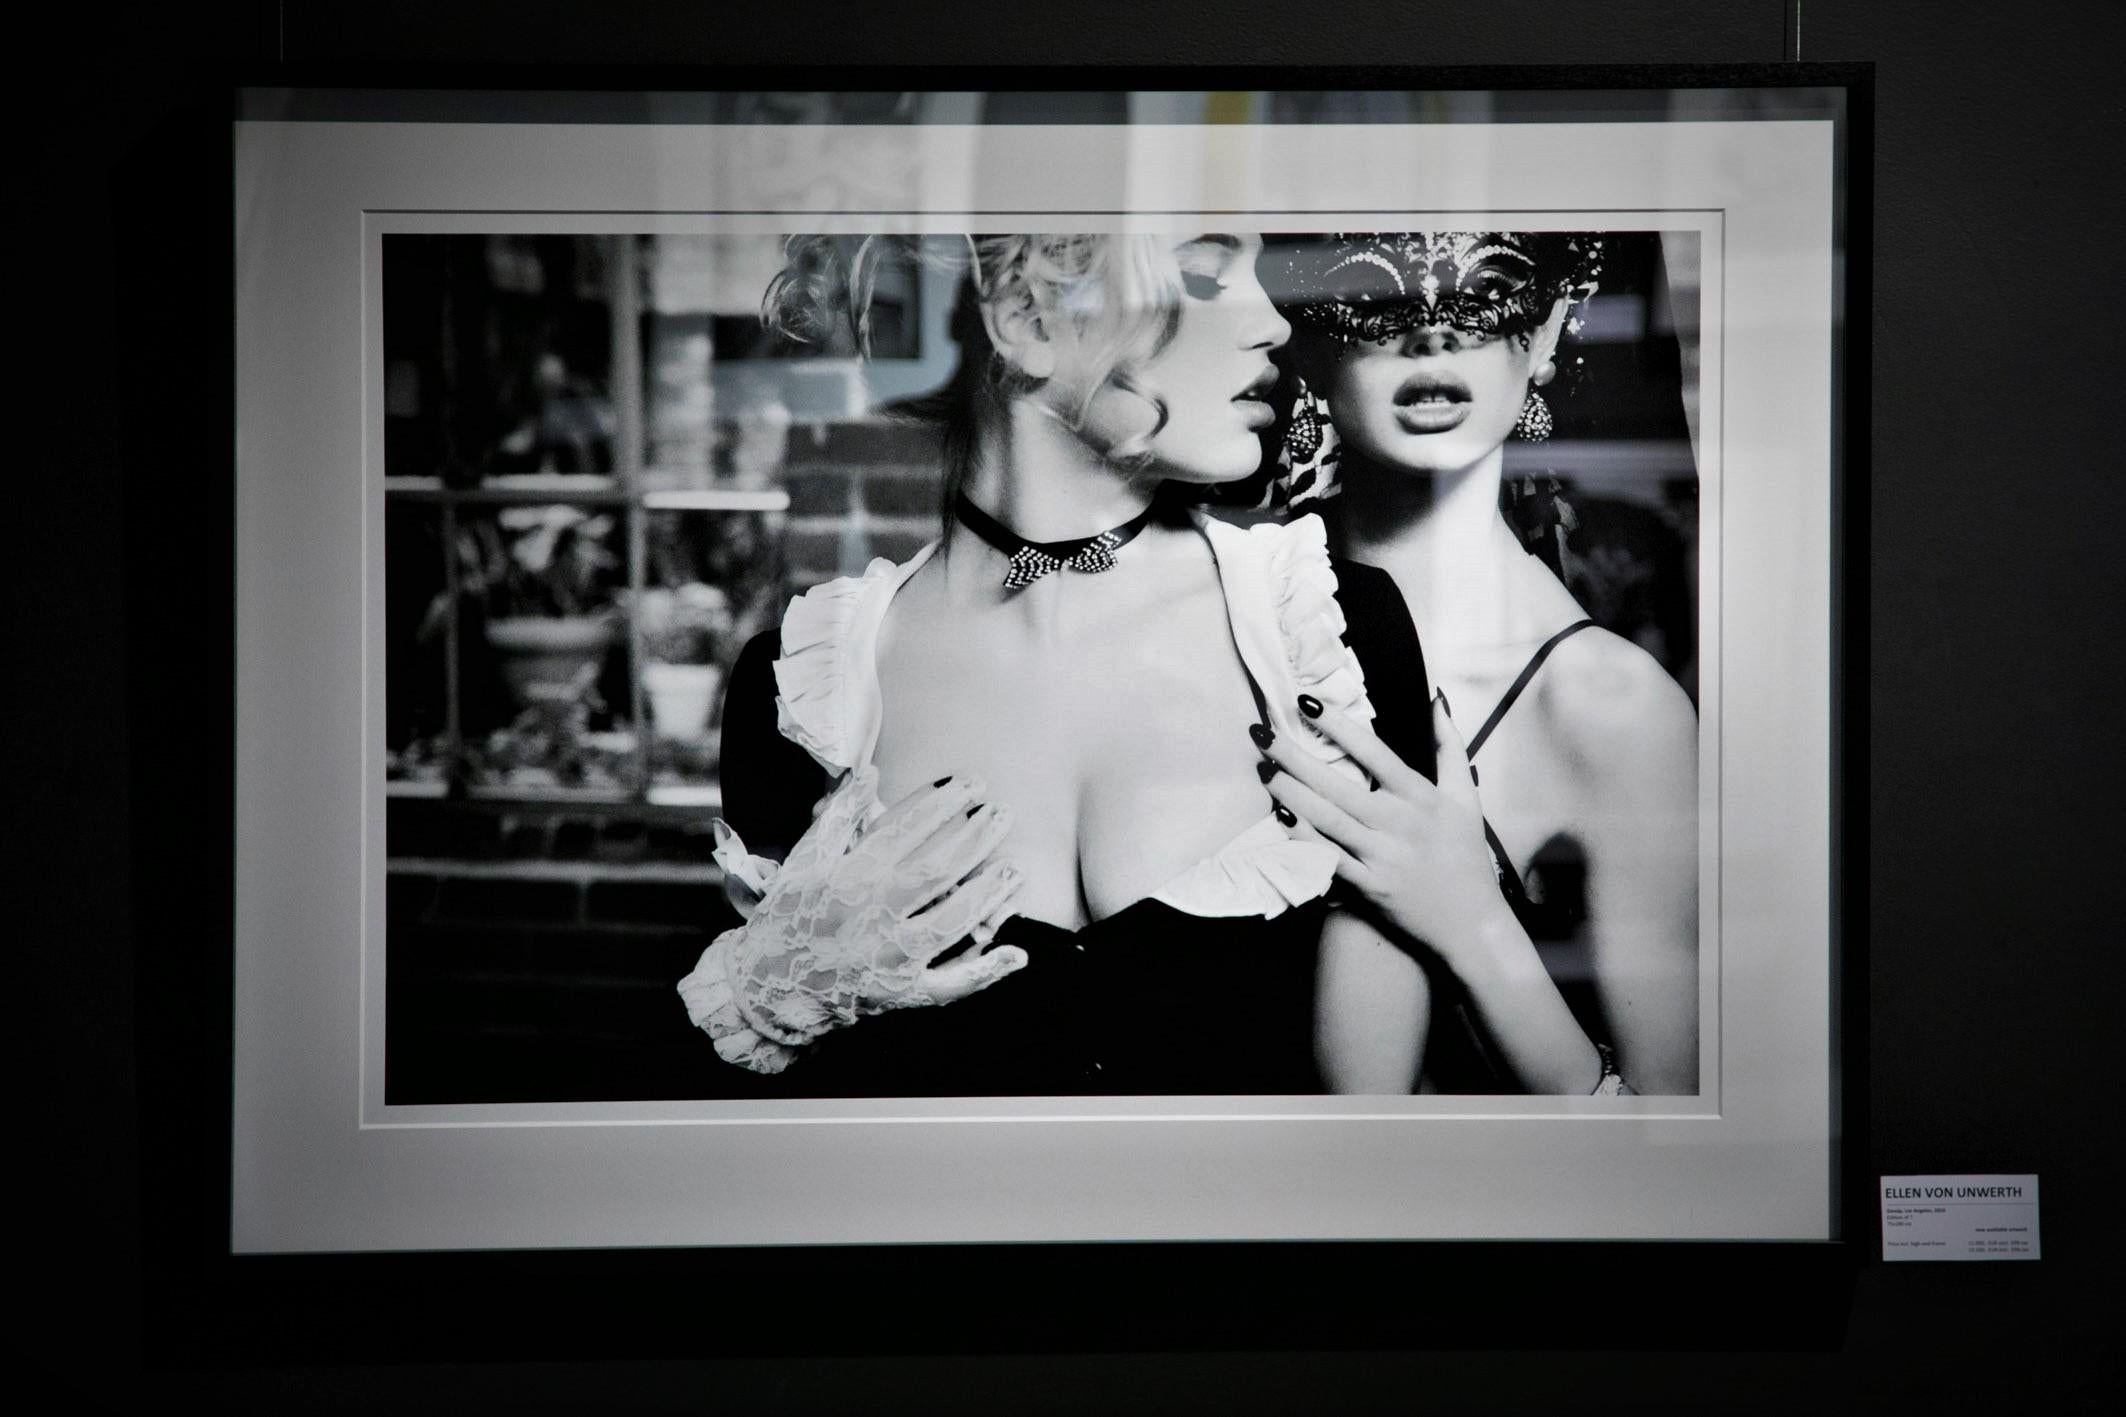 Gossip - sensual portrait of two models in masks, fine art photography, 2003 - Photograph by Ellen von Unwerth